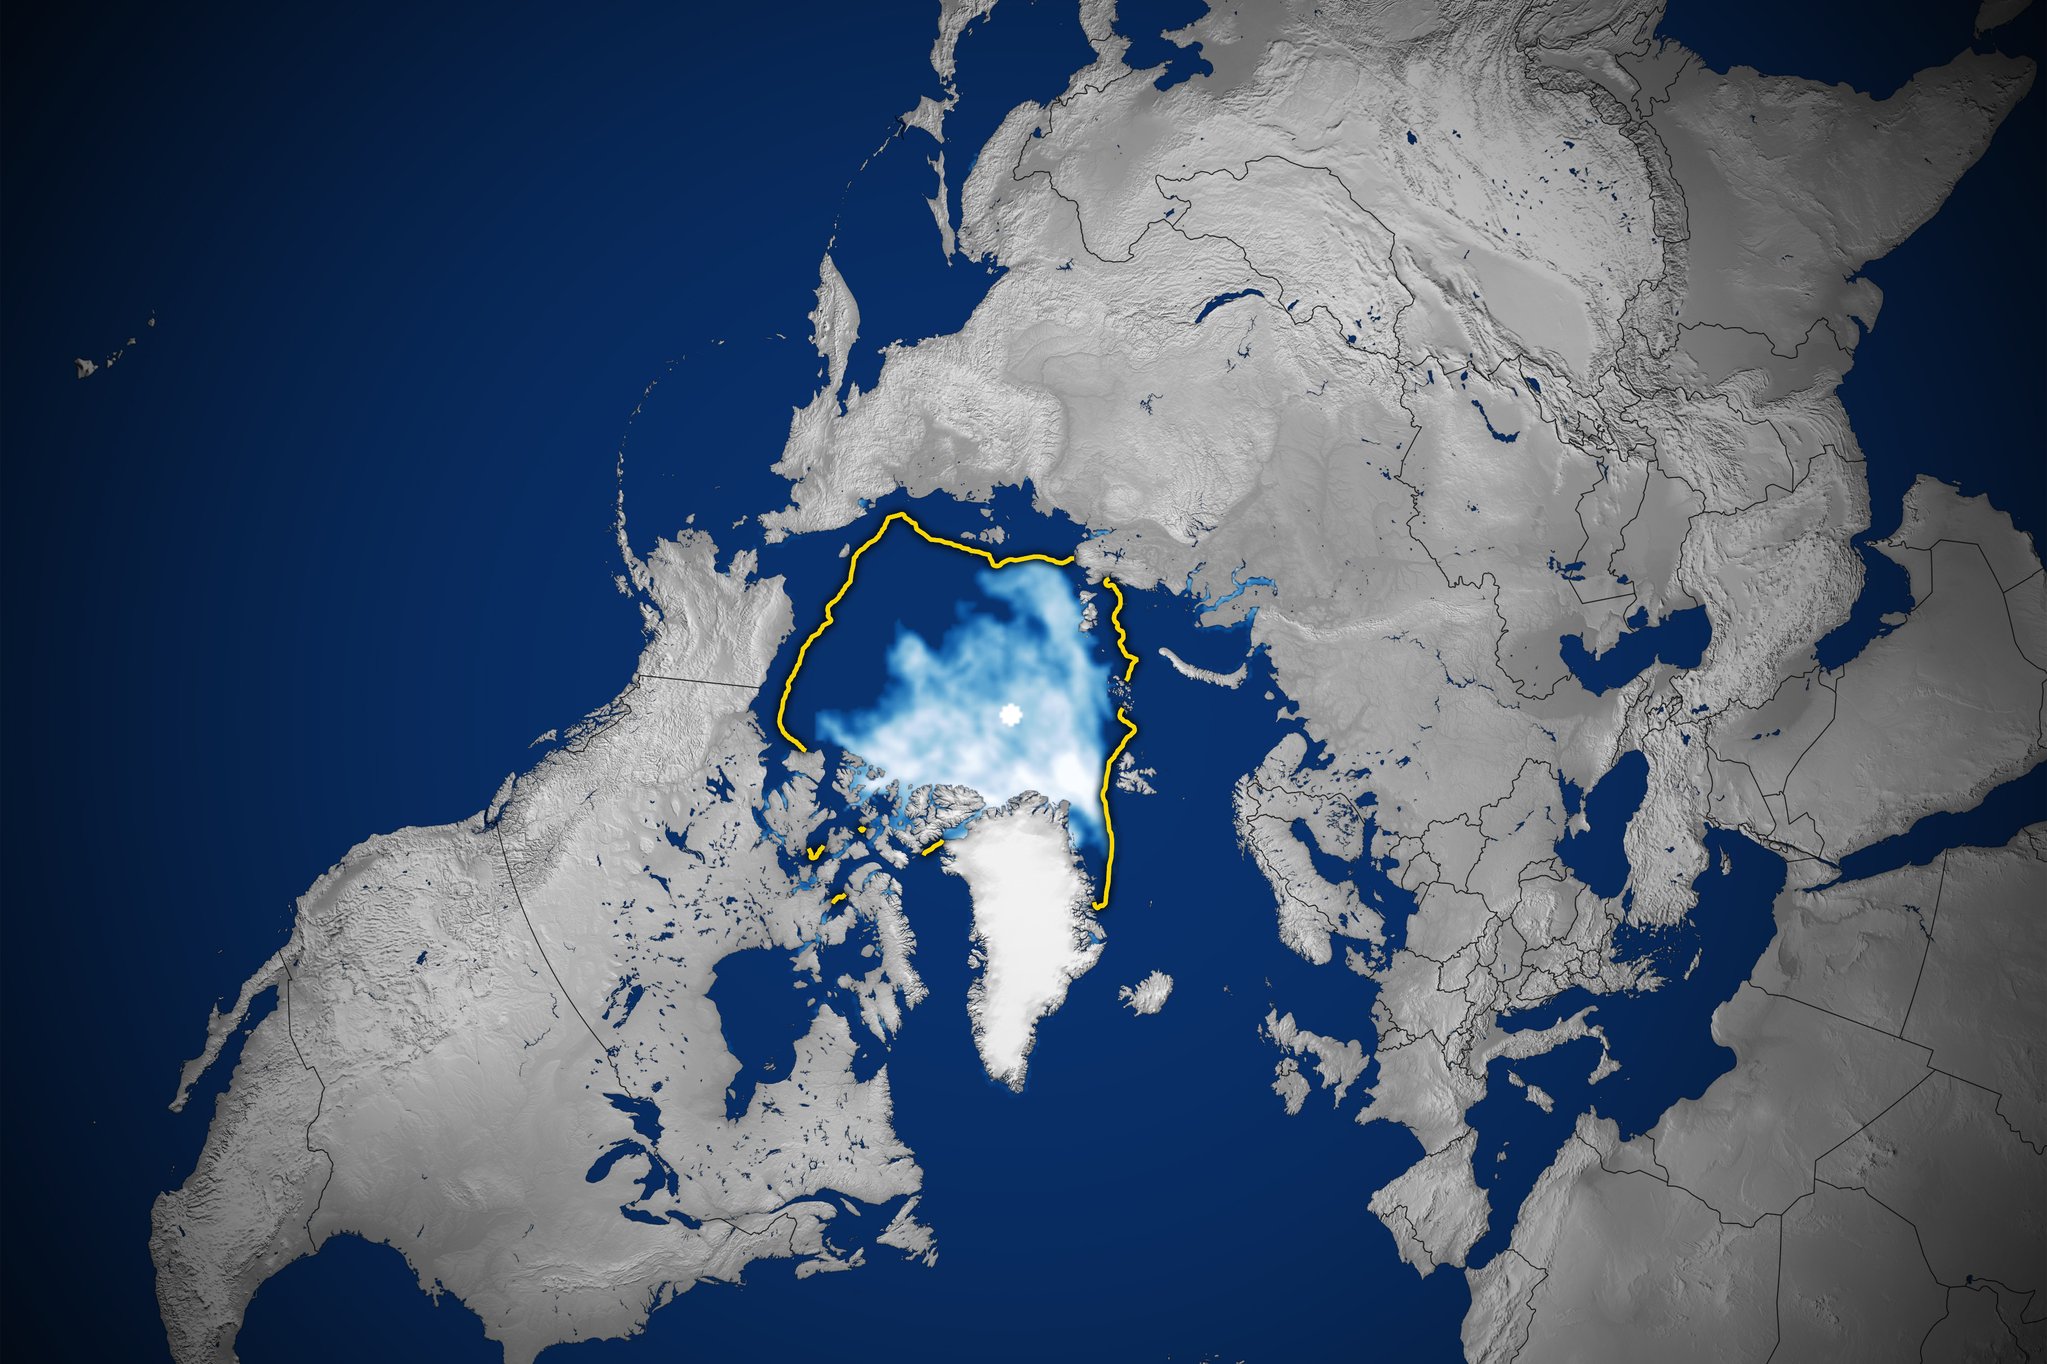 미 항공우주국(NASA)와 국립빙설자료센터(NSIDC)가 위성으로 분석한 9월 19일 북극 해빙 면적(흰색 부분). 흰색이 진할수록 해빙이 두껍게 얼었다는 뜻이다. 노란색 영역은 1981~2010년 평균 해빙 최소면적이다. NASA는 